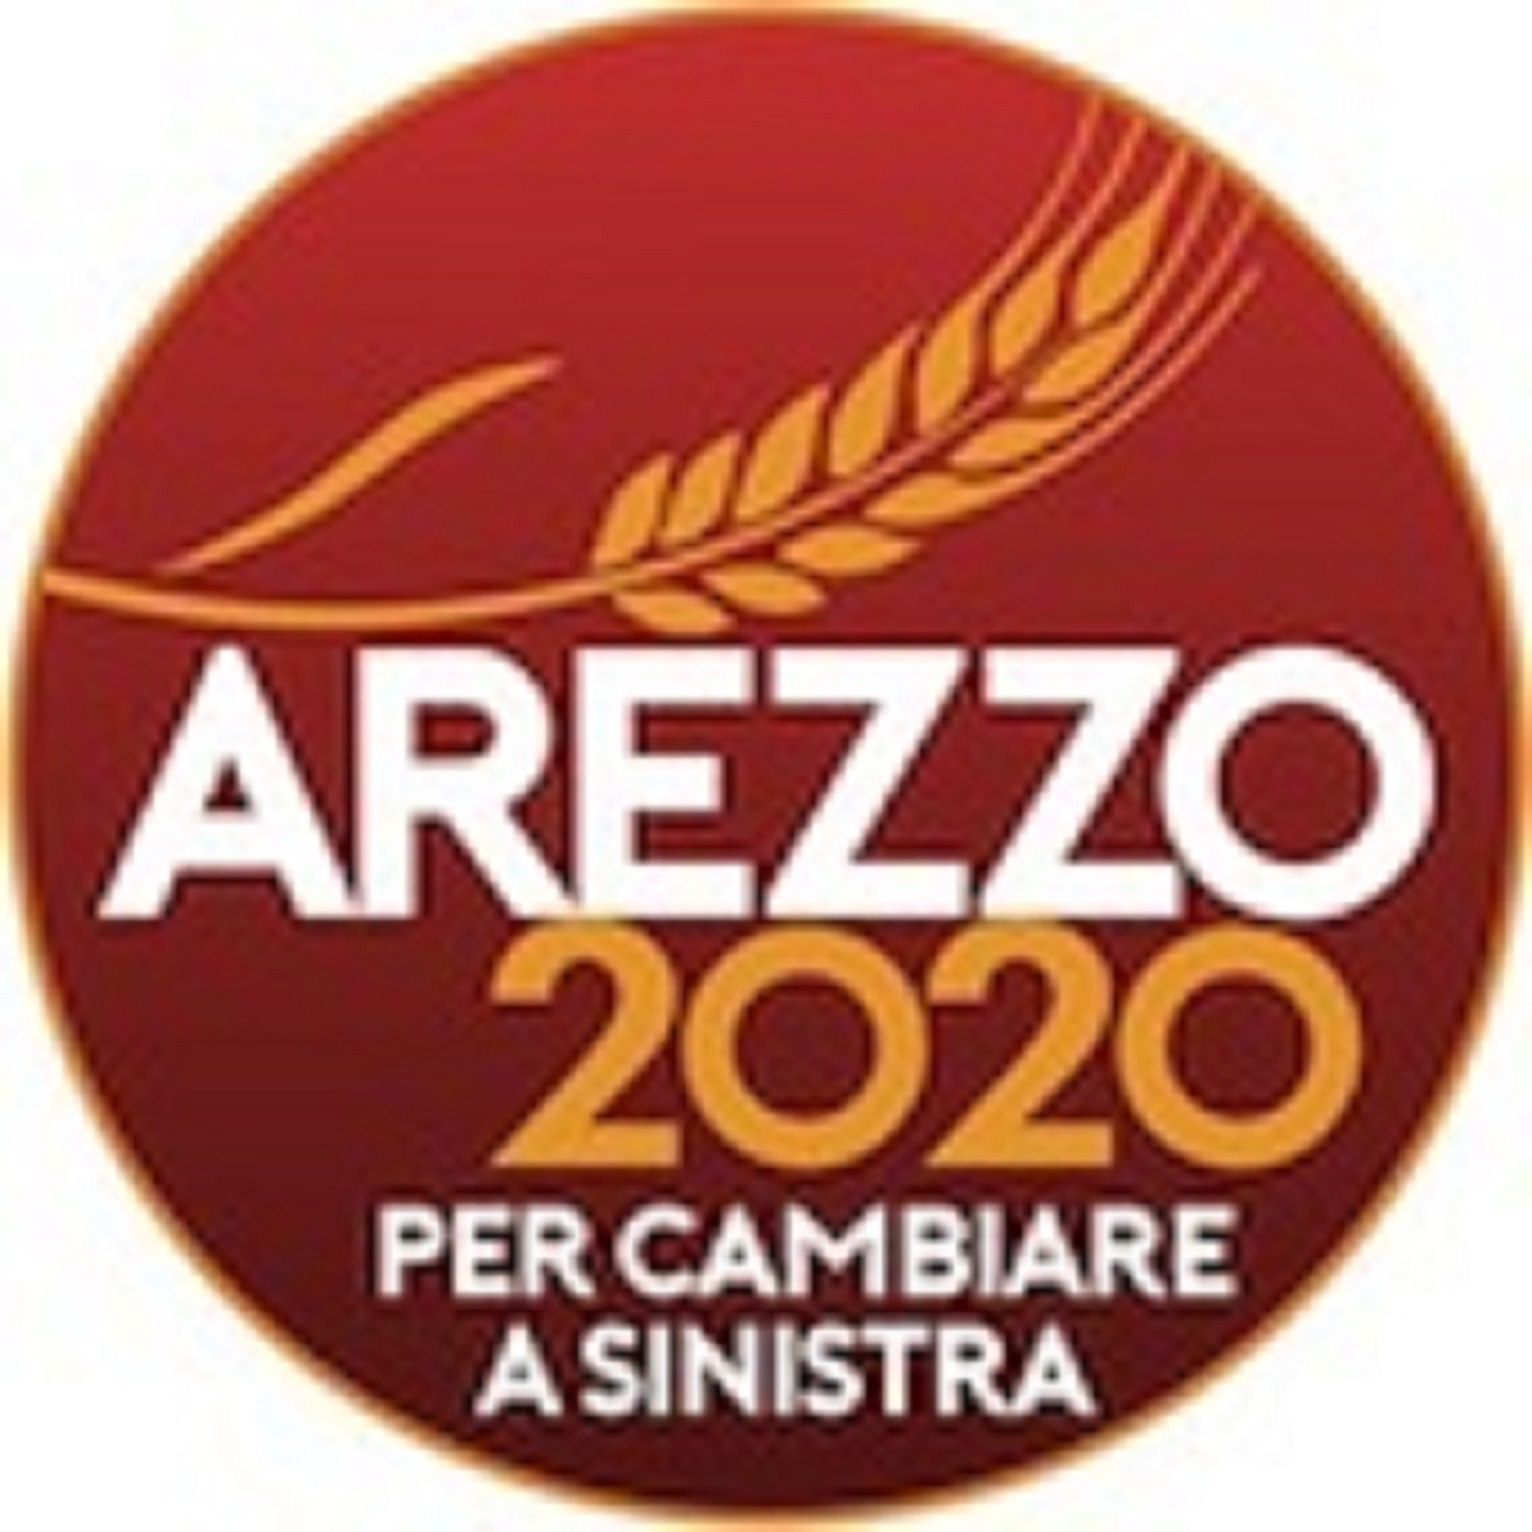 Arezzo 2020: “Arezzo capitale della cultura?”